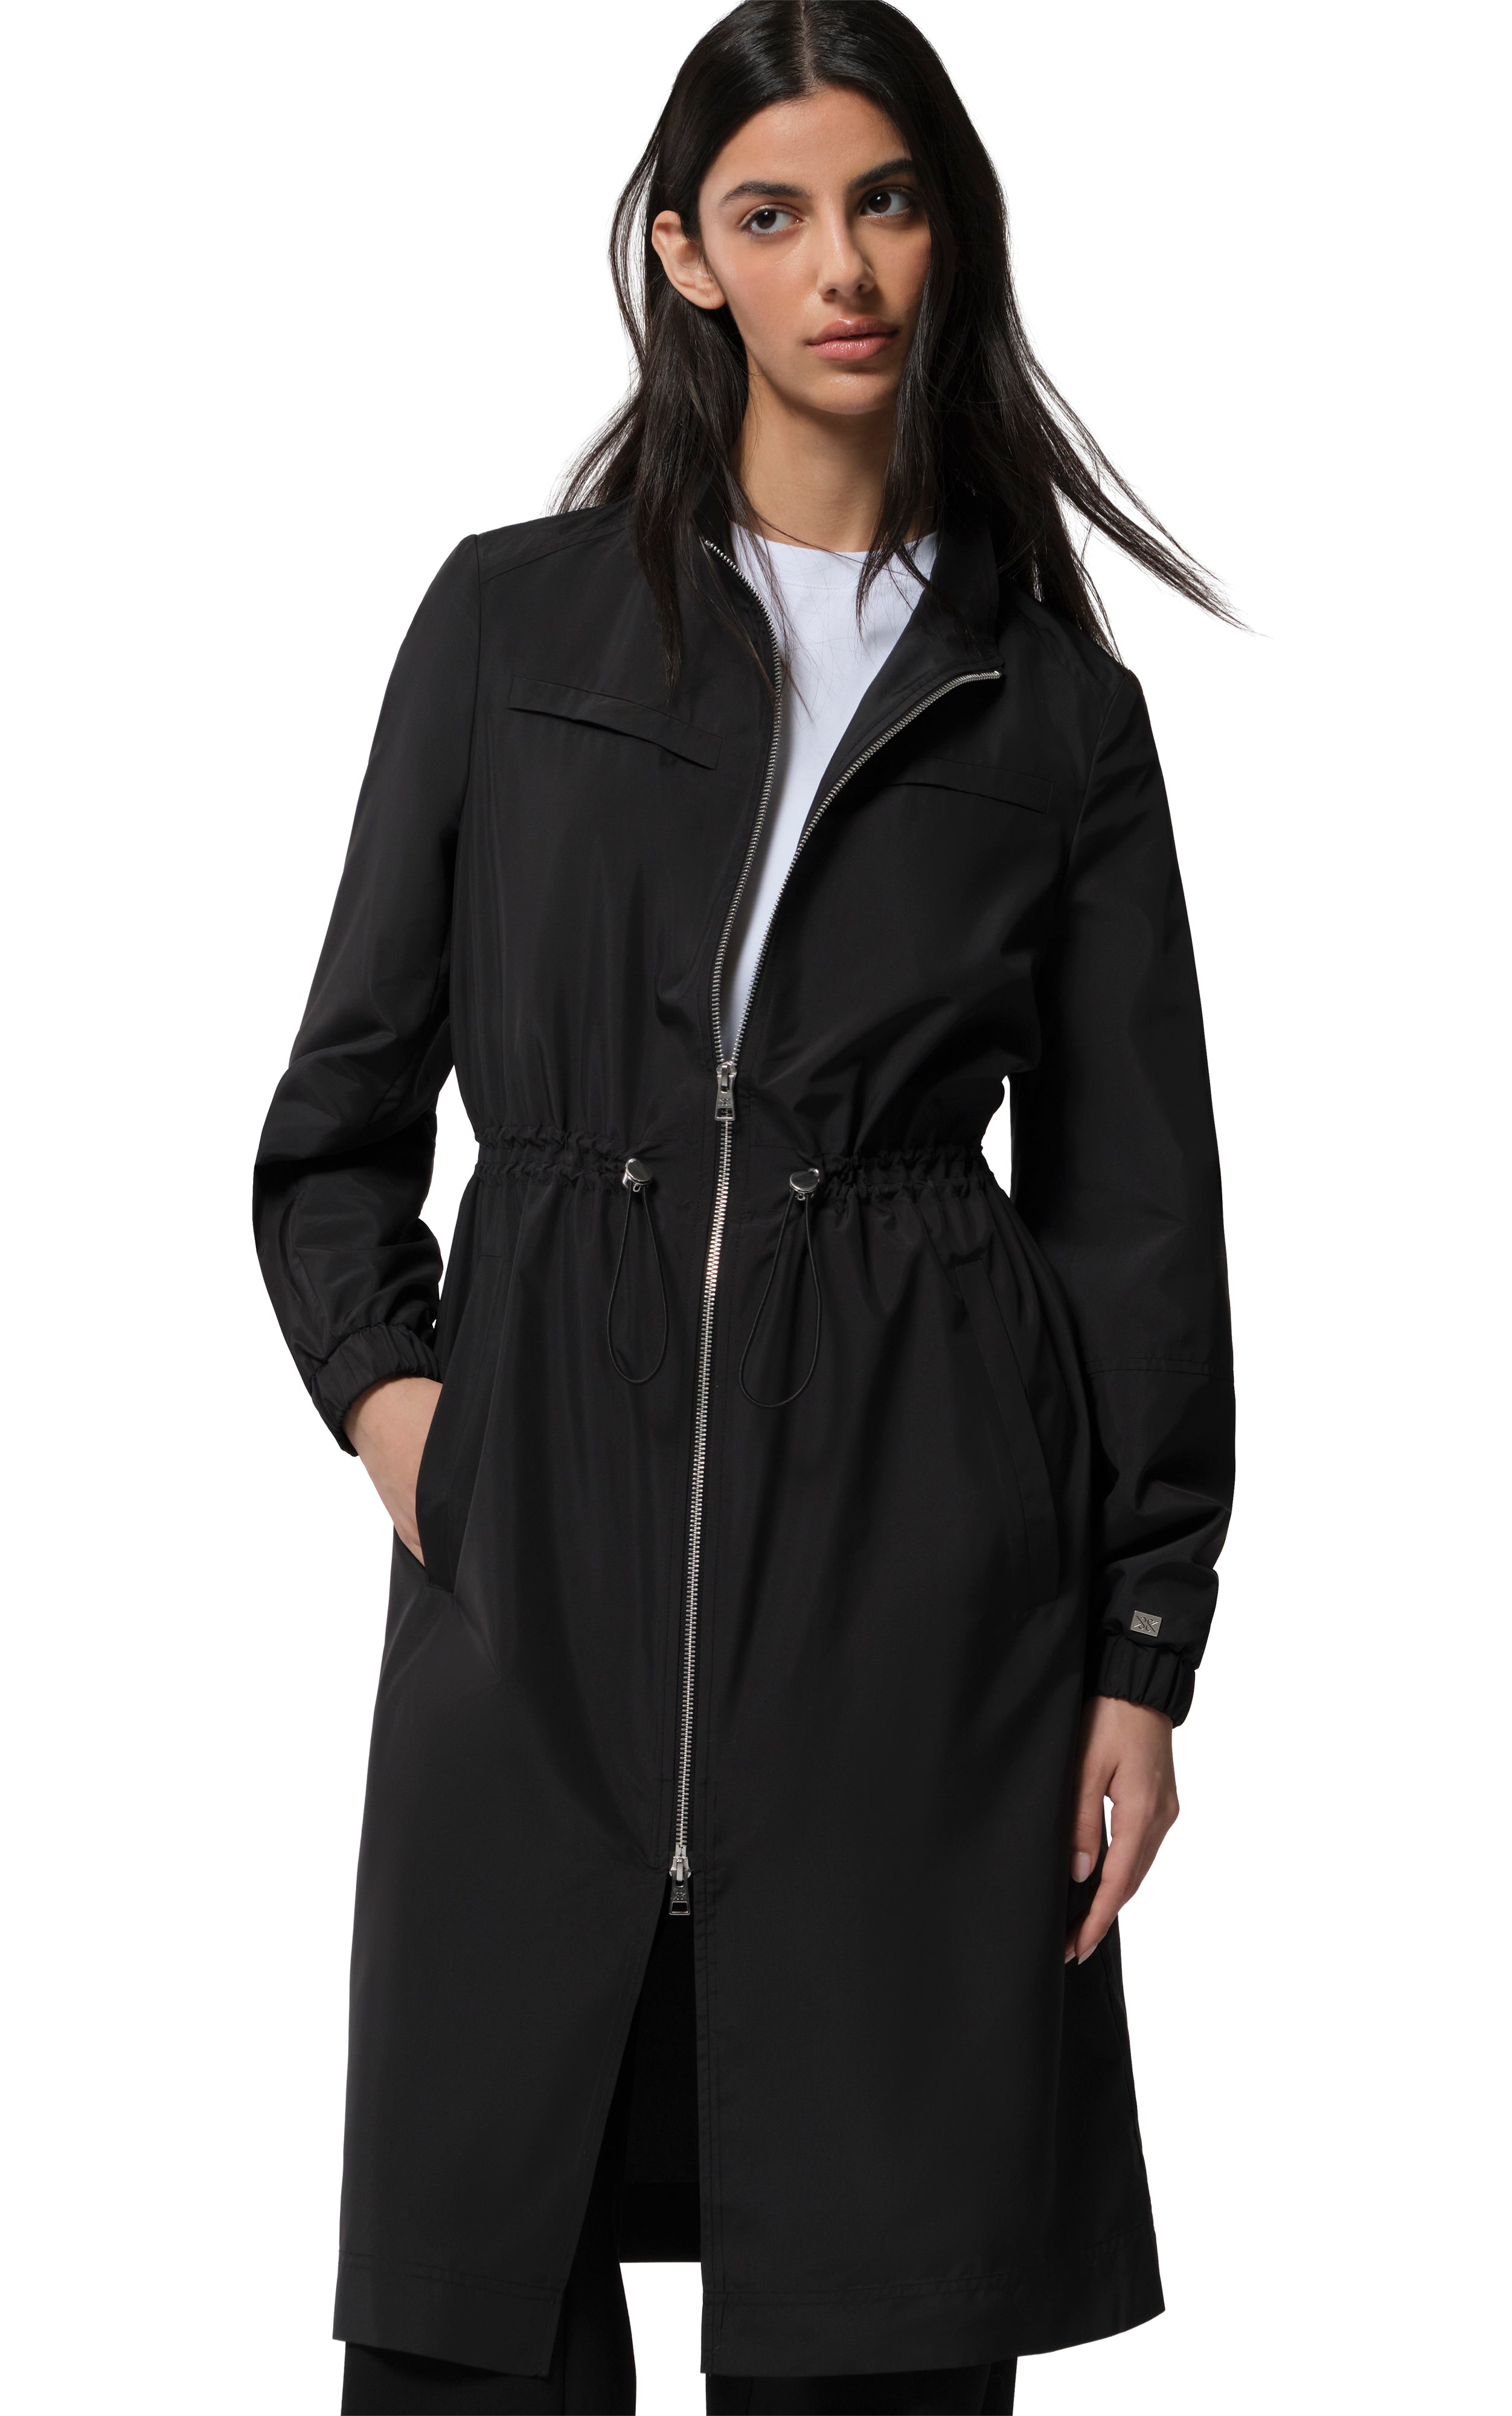 HENNA Rainwear Coat Black